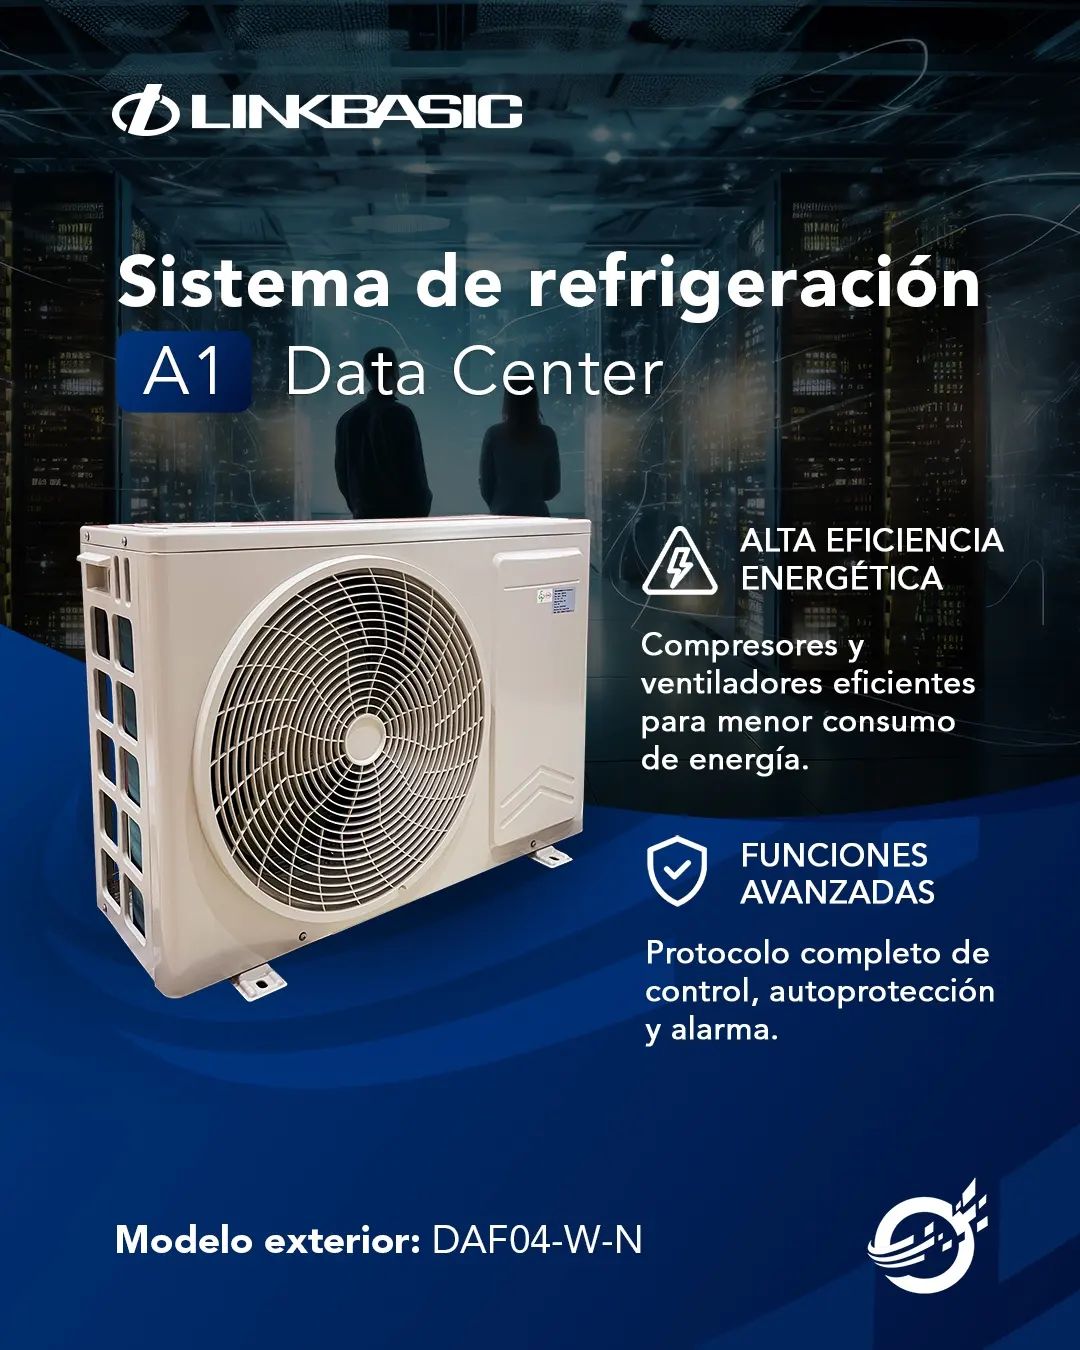 ¡Mejora la eficiencia y protege tu data center con los aires de Linkbasic! 💨...